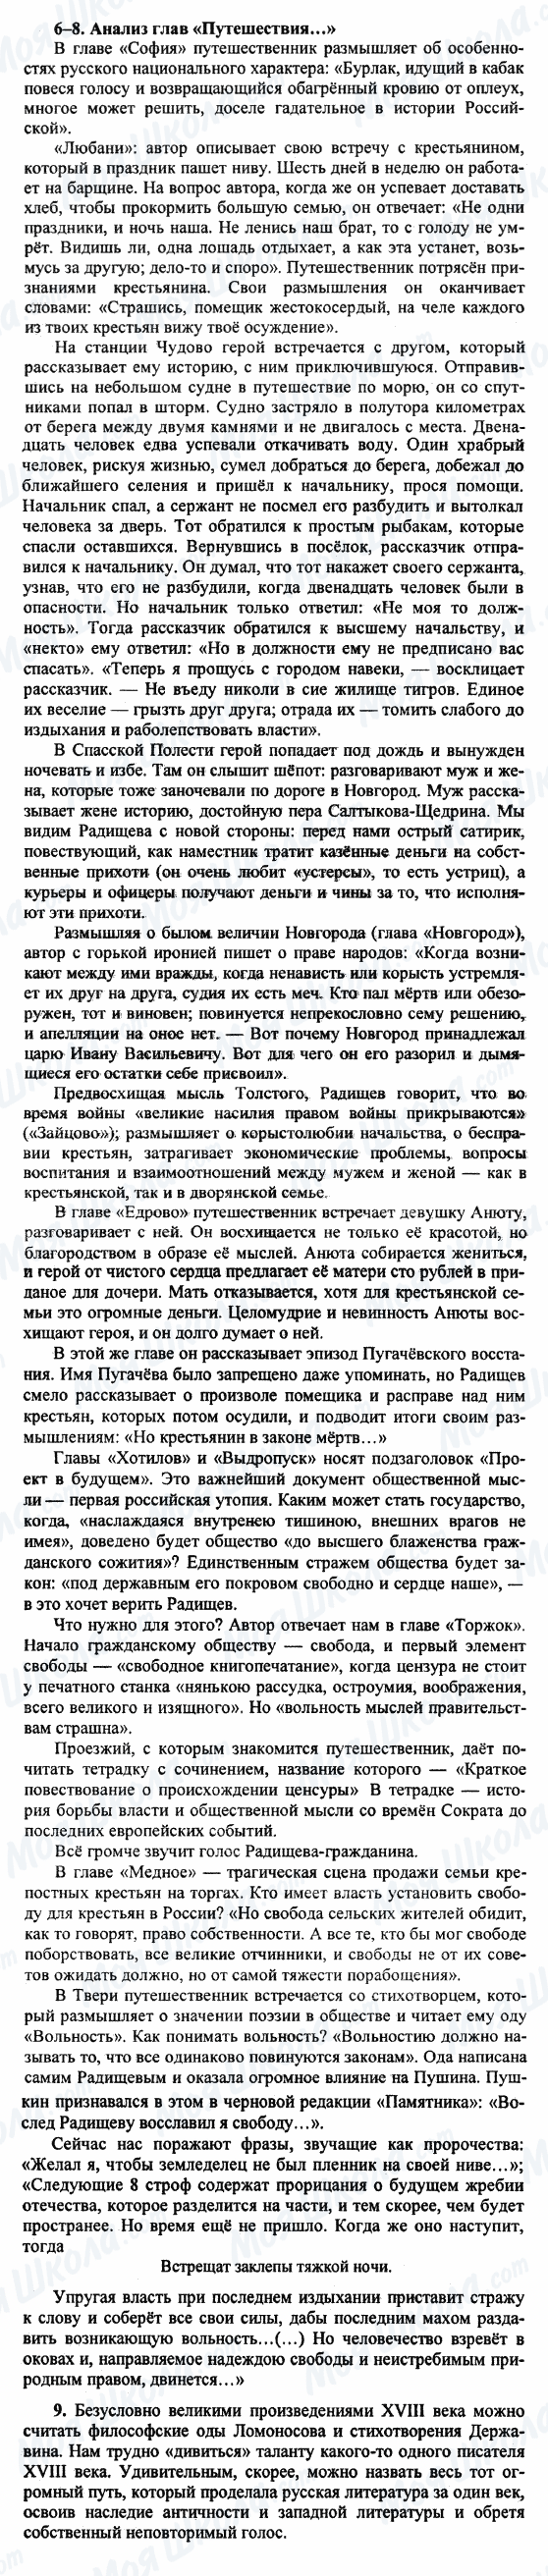 ГДЗ Русская литература 9 класс страница 6-8-9